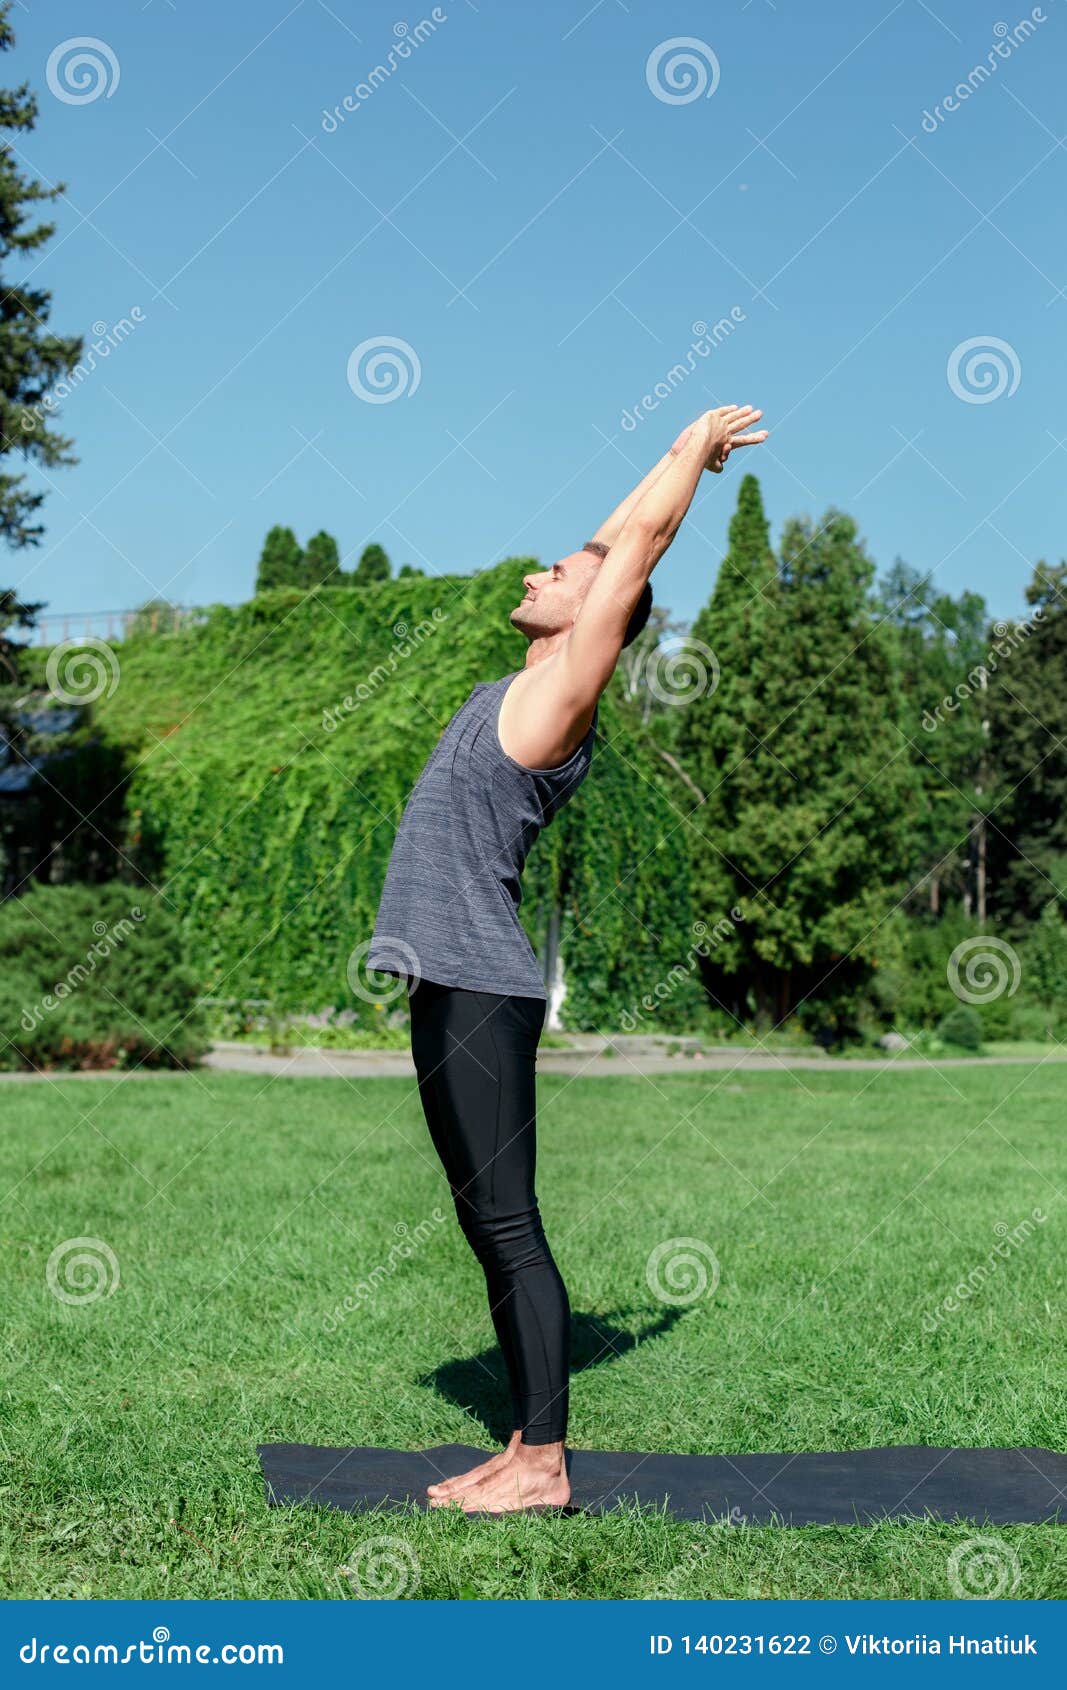 Yoga Pose: Upward Salute | Pocket Yoga